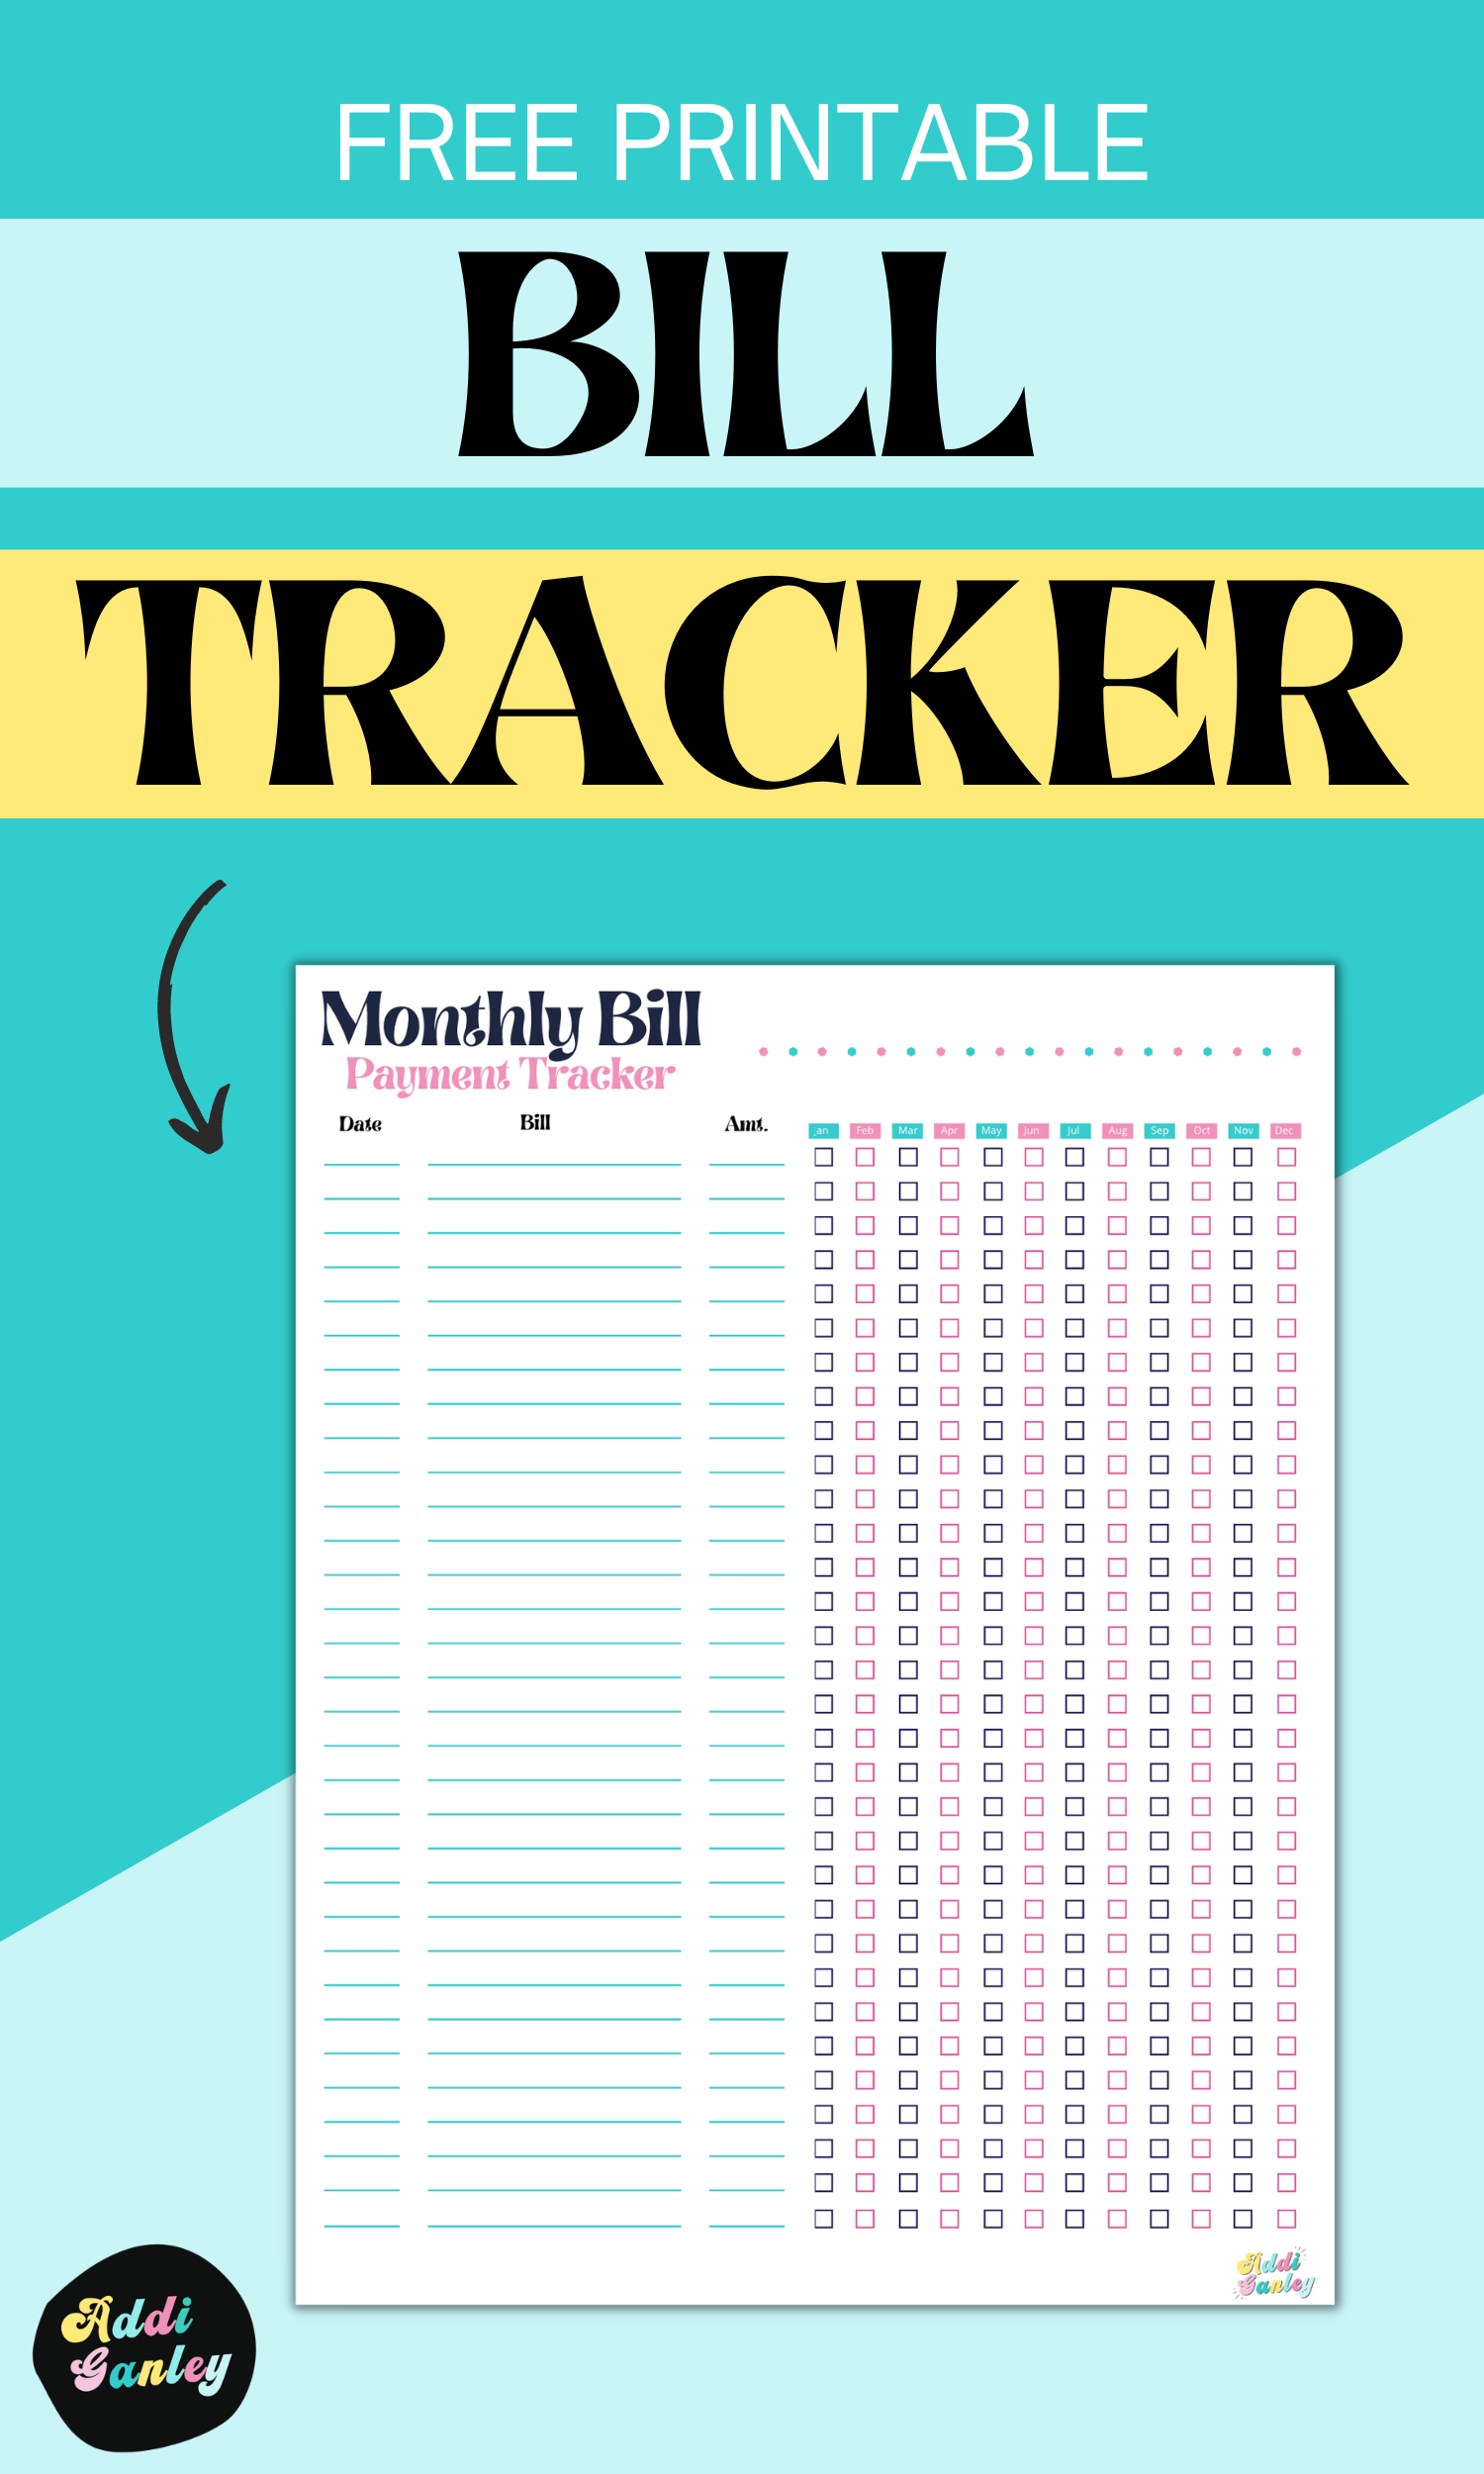 Bill Tracker, Bill Payment Printables